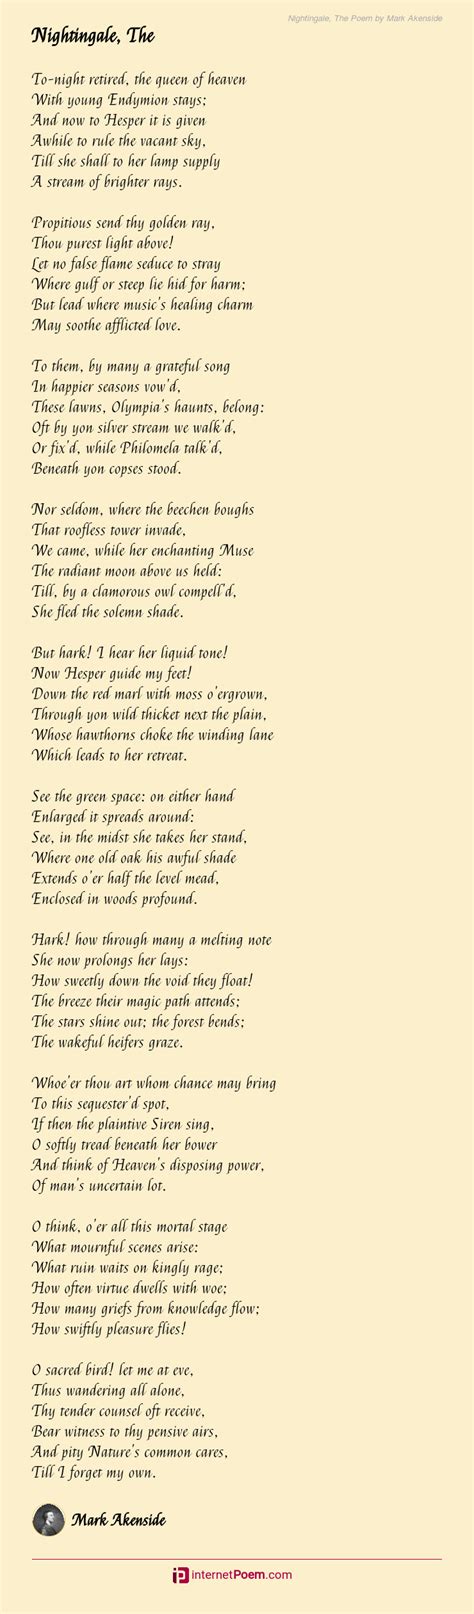 Nightingale The Poem By Mark Akenside